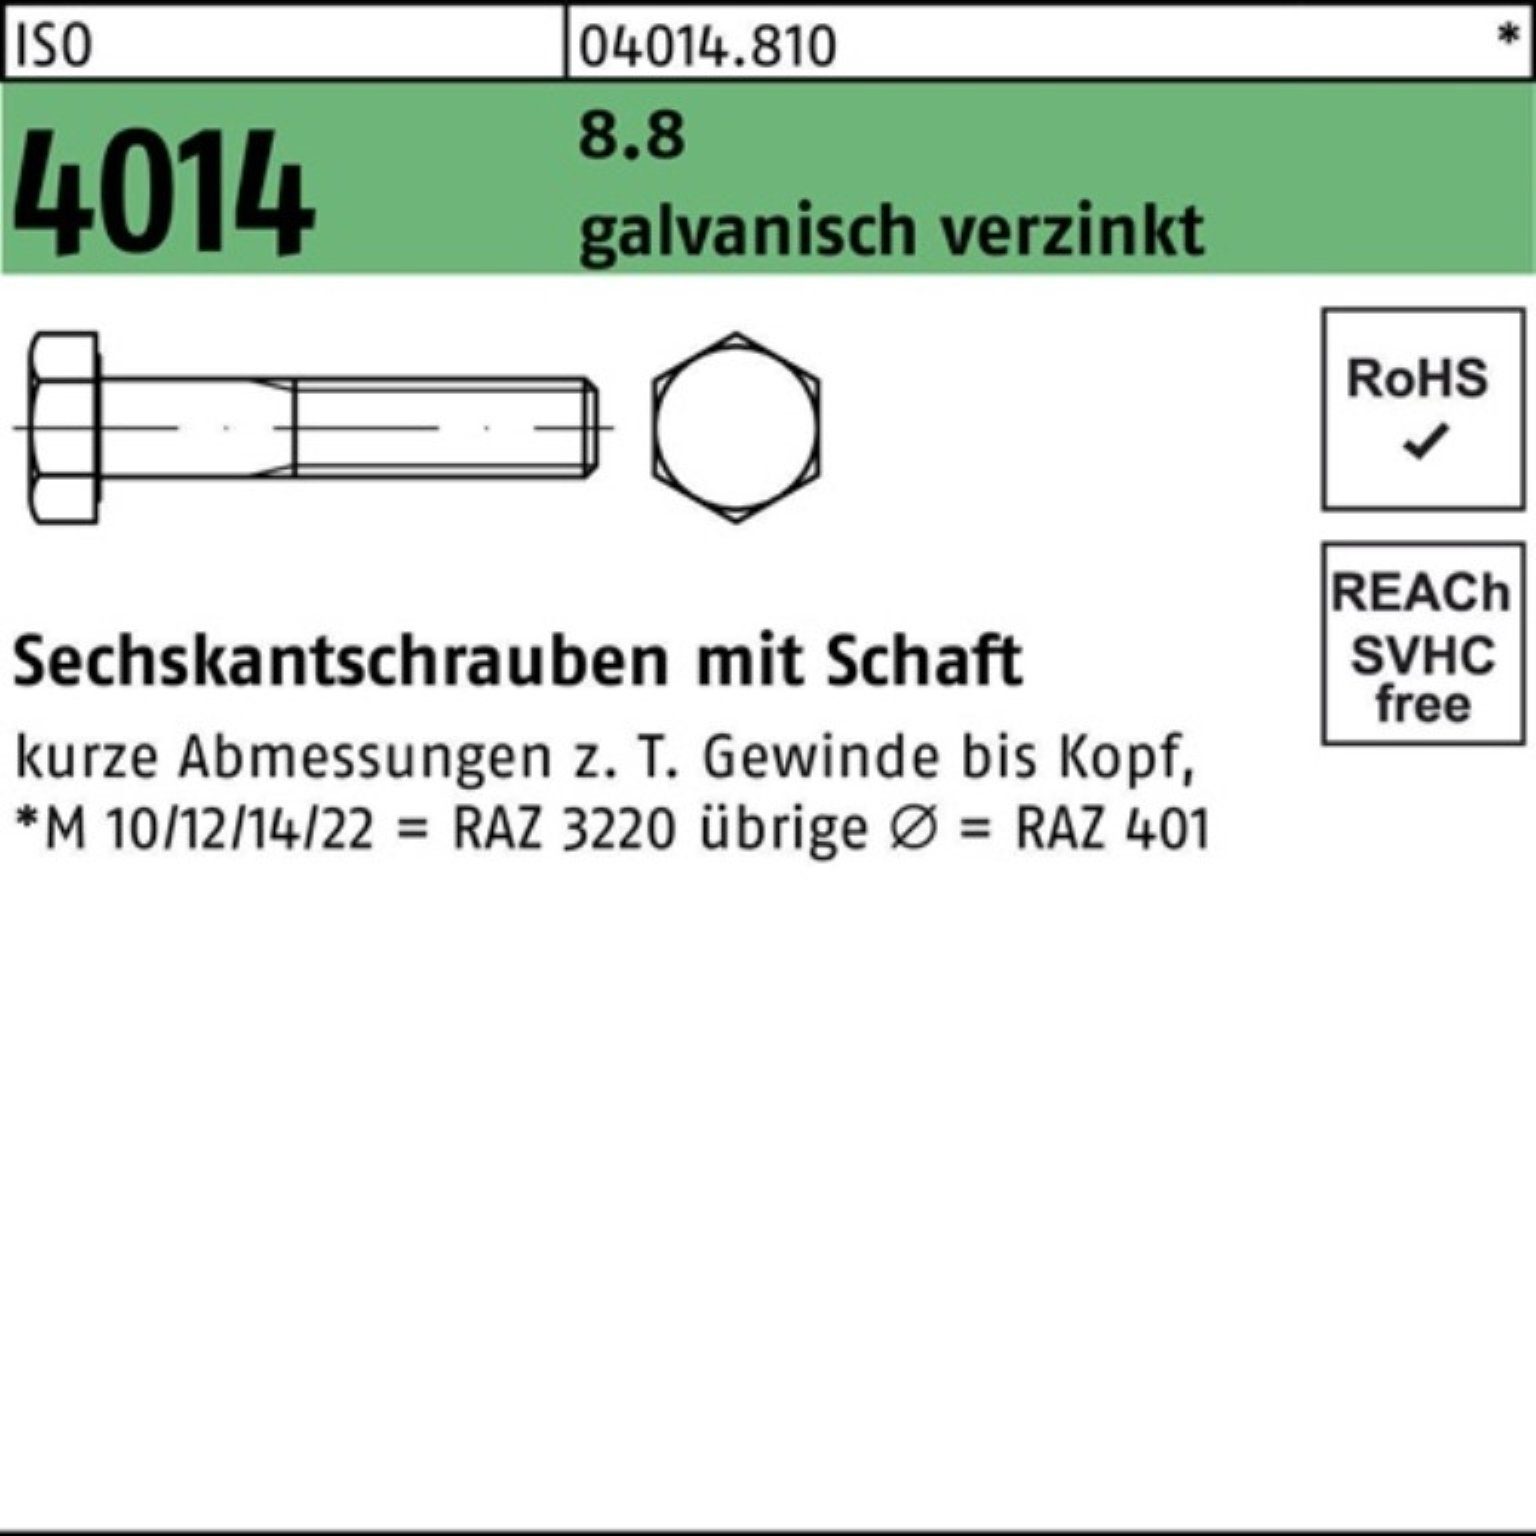 Bufab Sechskantschraube 100er Pack Schaft 4014 1 300 8.8 galv.verz. M16x Sechskantschraube ISO